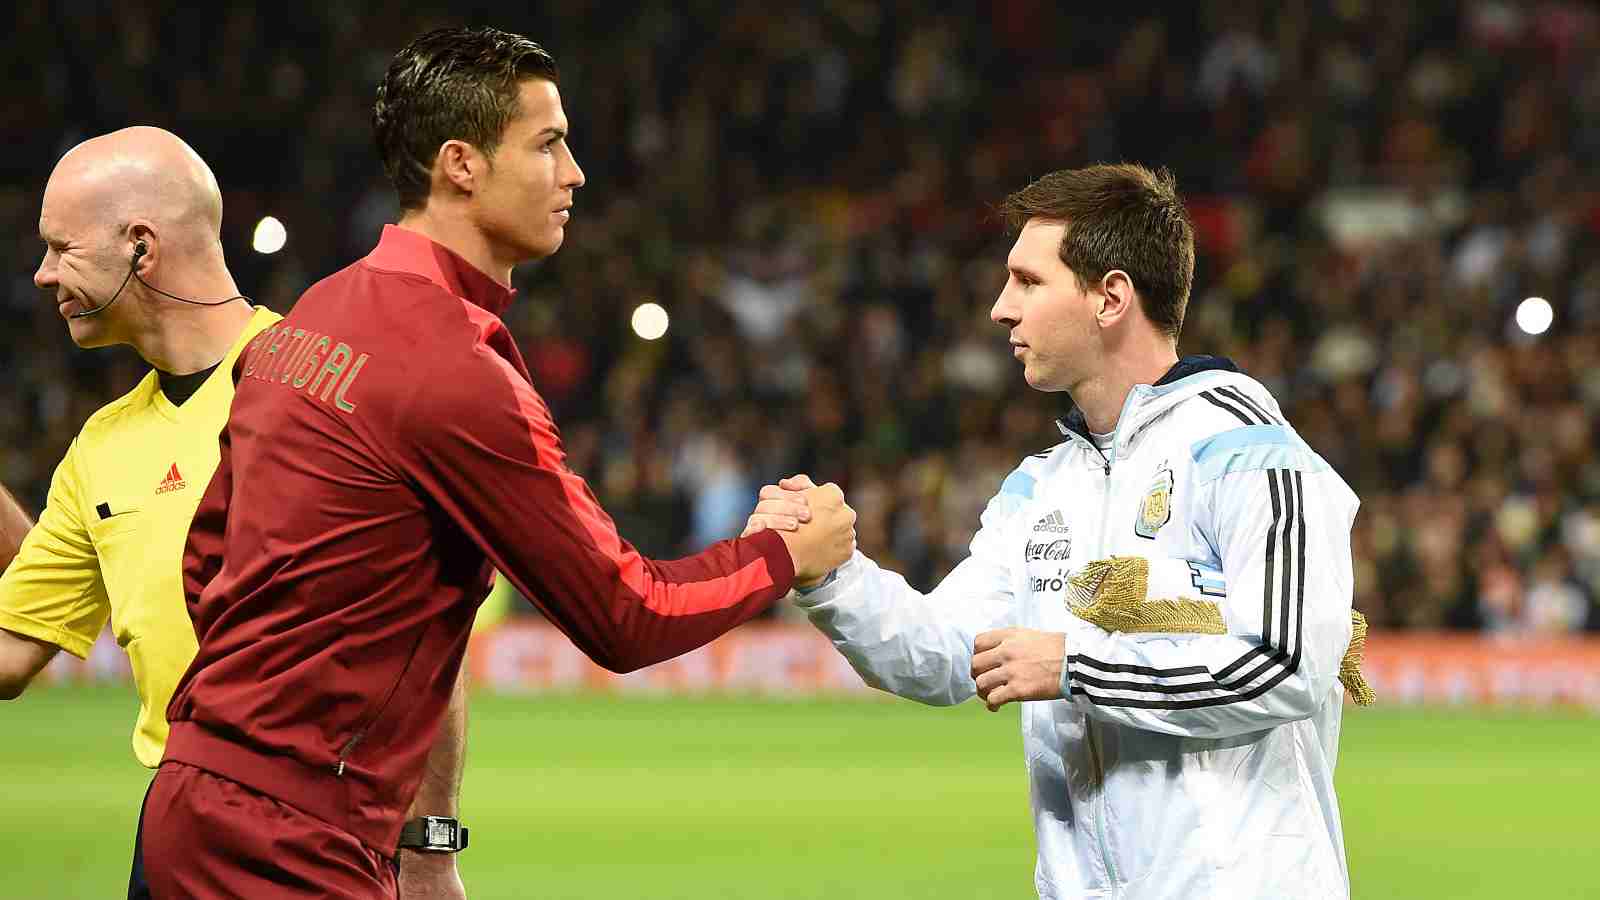 Cristiano Ronaldo vs Lionel Messi: the G.O.A.T. debate!